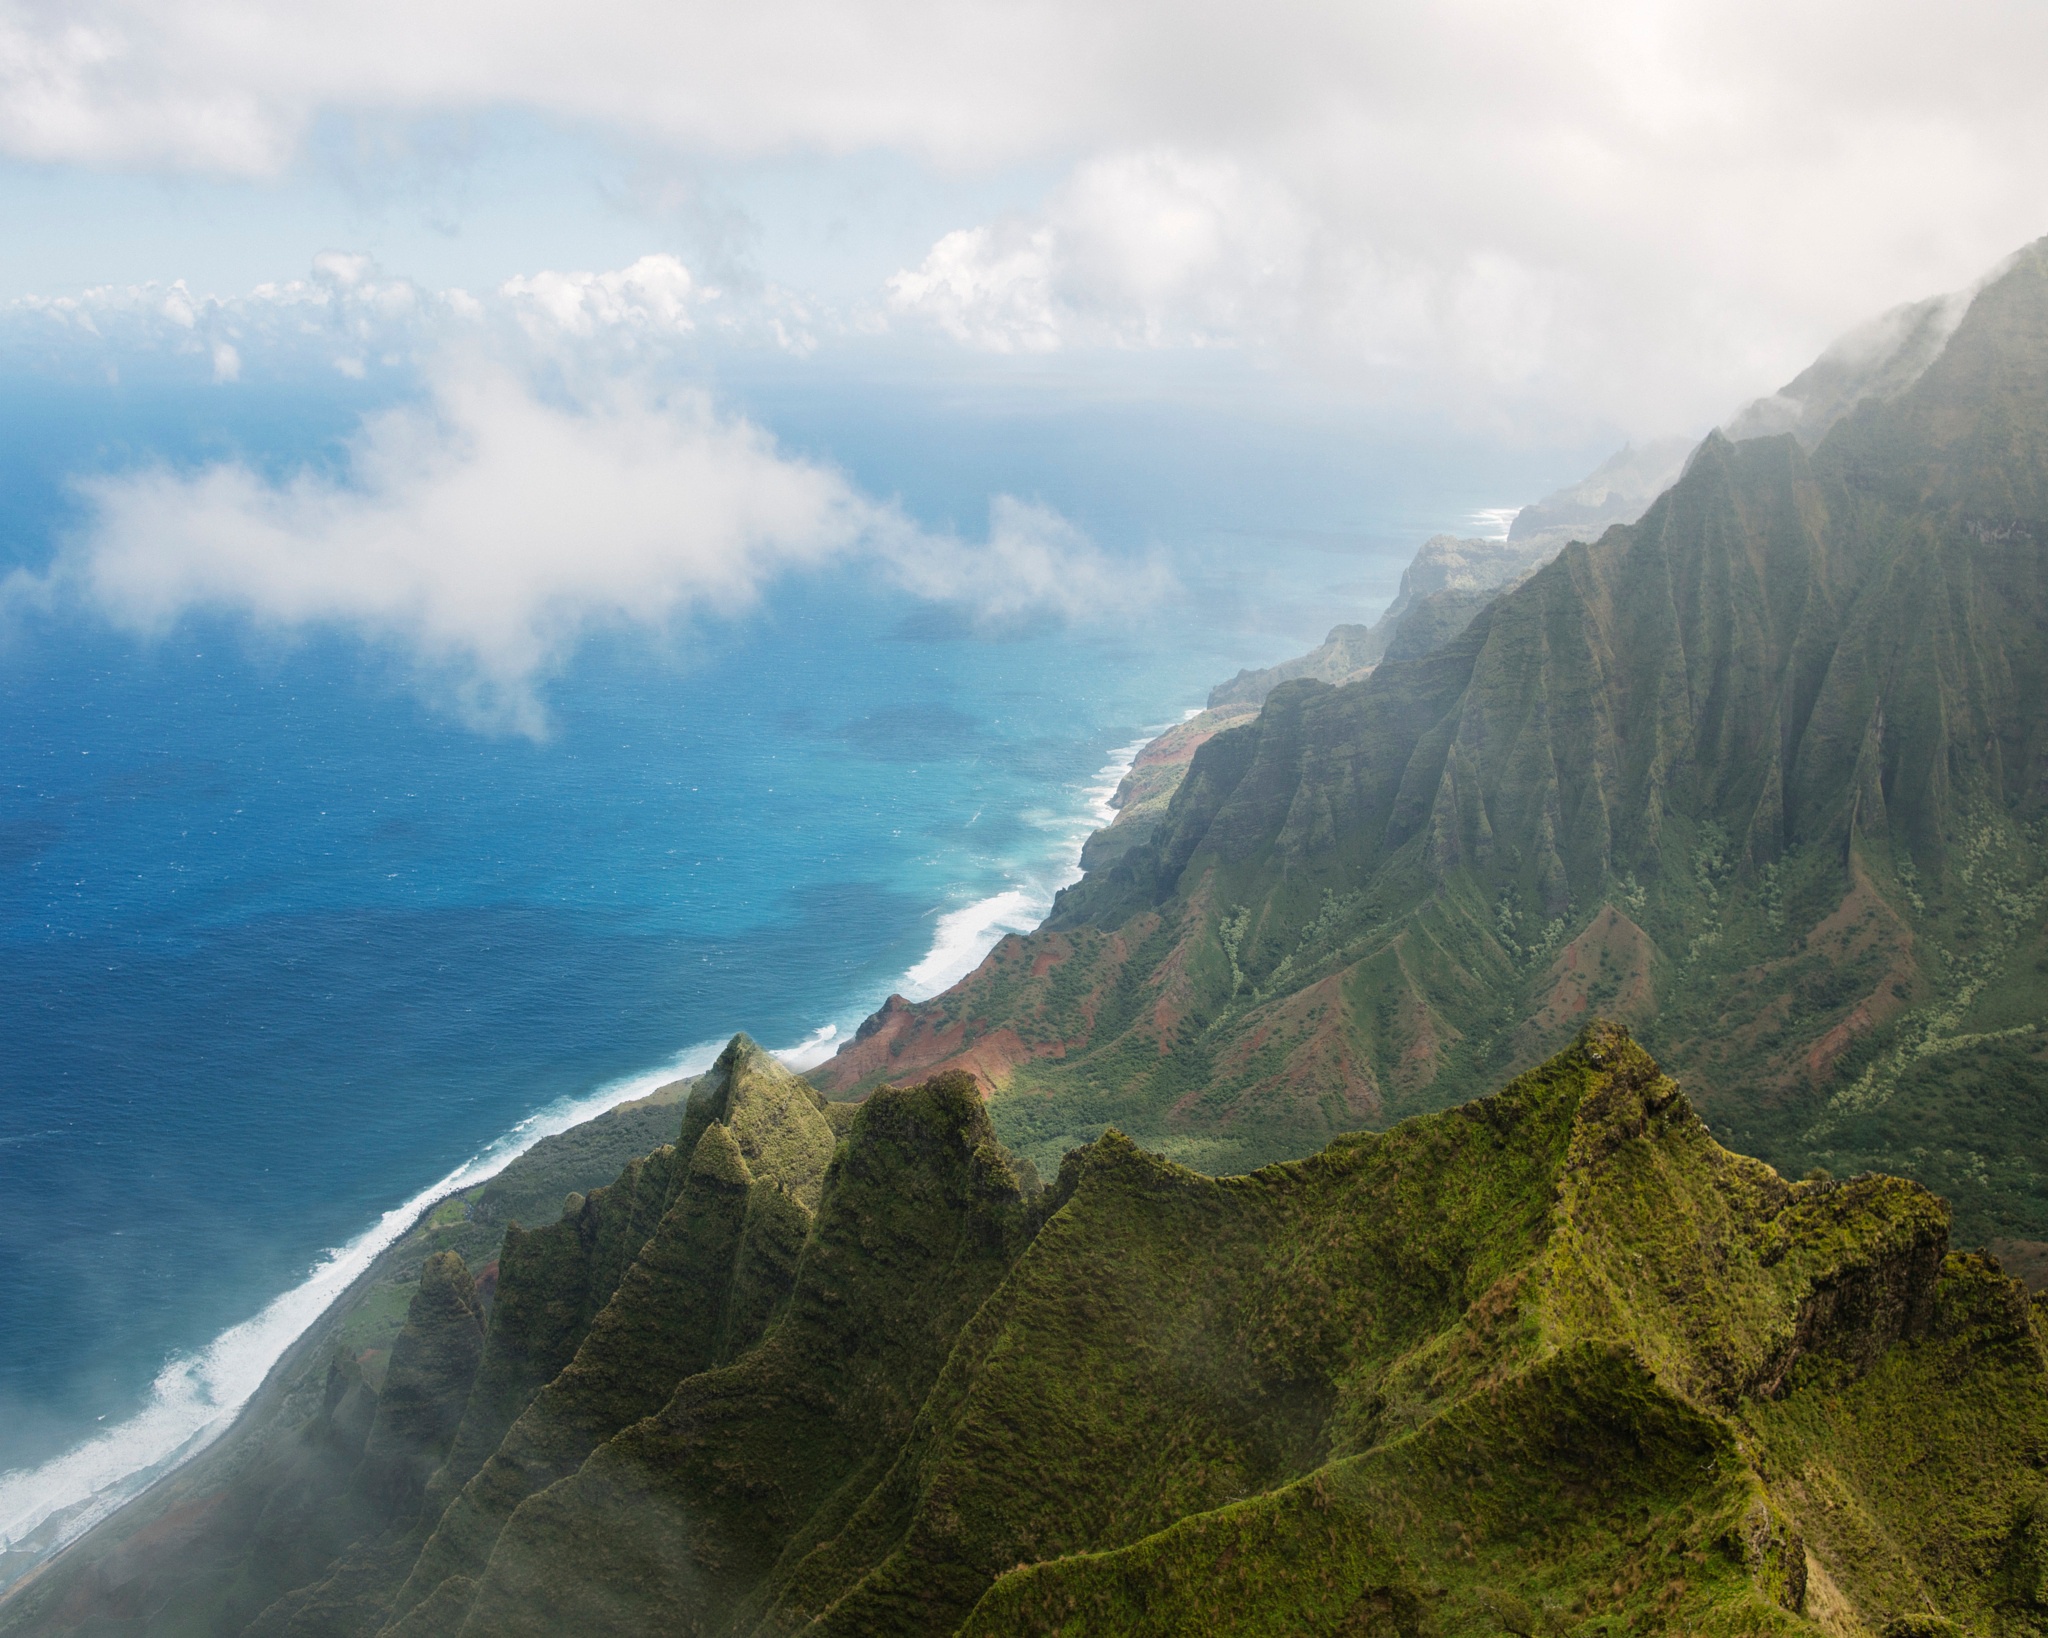 Скачать обои бесплатно Море, Гора, Туман, Тропический, Гавайи, Антенна, Земля/природа, Морской Пейзаж картинка на рабочий стол ПК